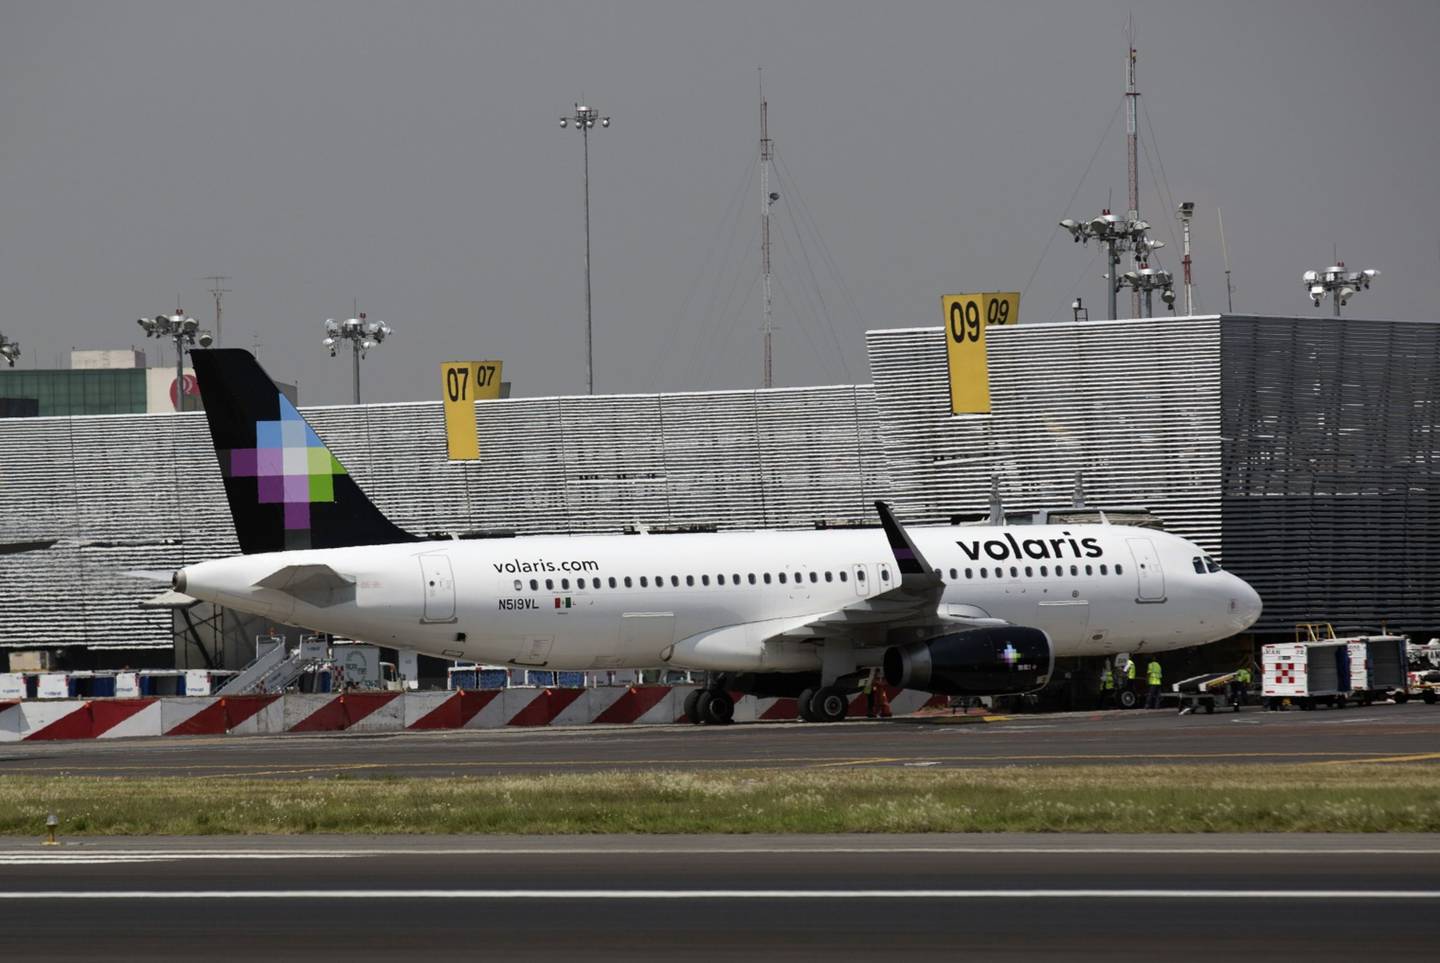 La línea aérea comenzará a operar en el nuevo aeropuerto a partir del 21 de marzo, con rutas hacia Tijuana y Cancún con una frecuencia diaria.